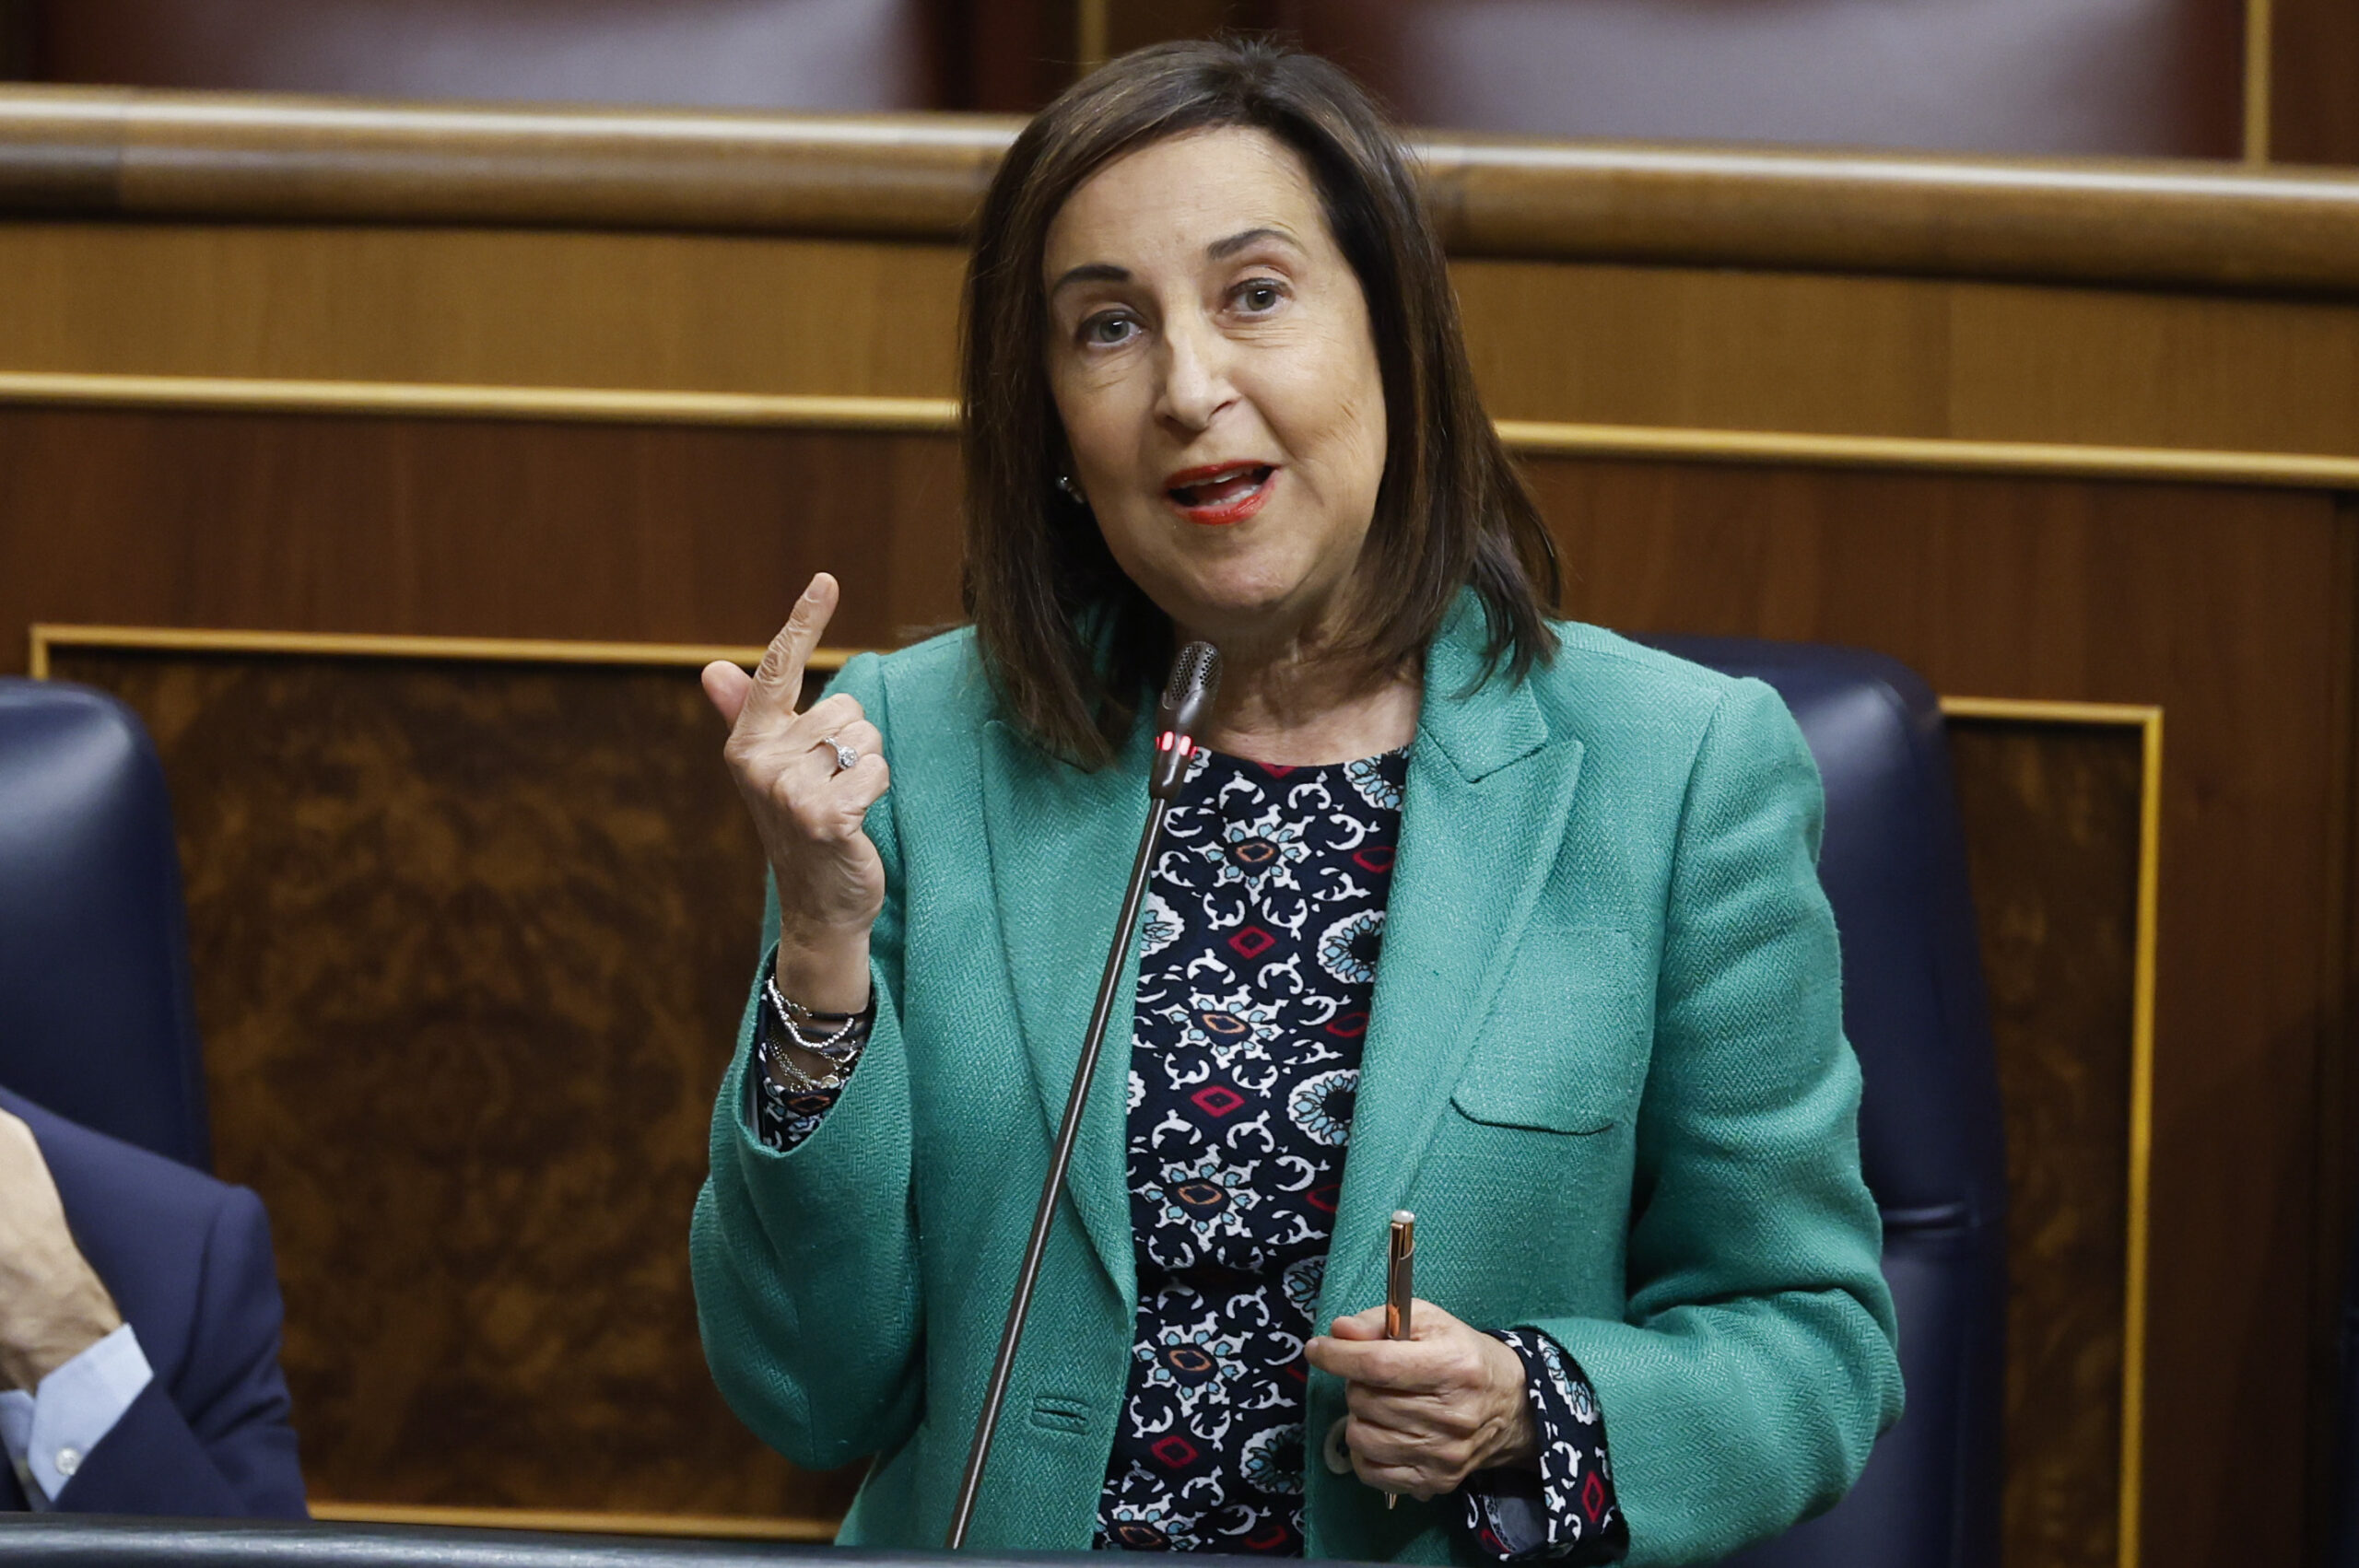 La ministra spagnola: "A Gaza si sta commettendo un genocidio"